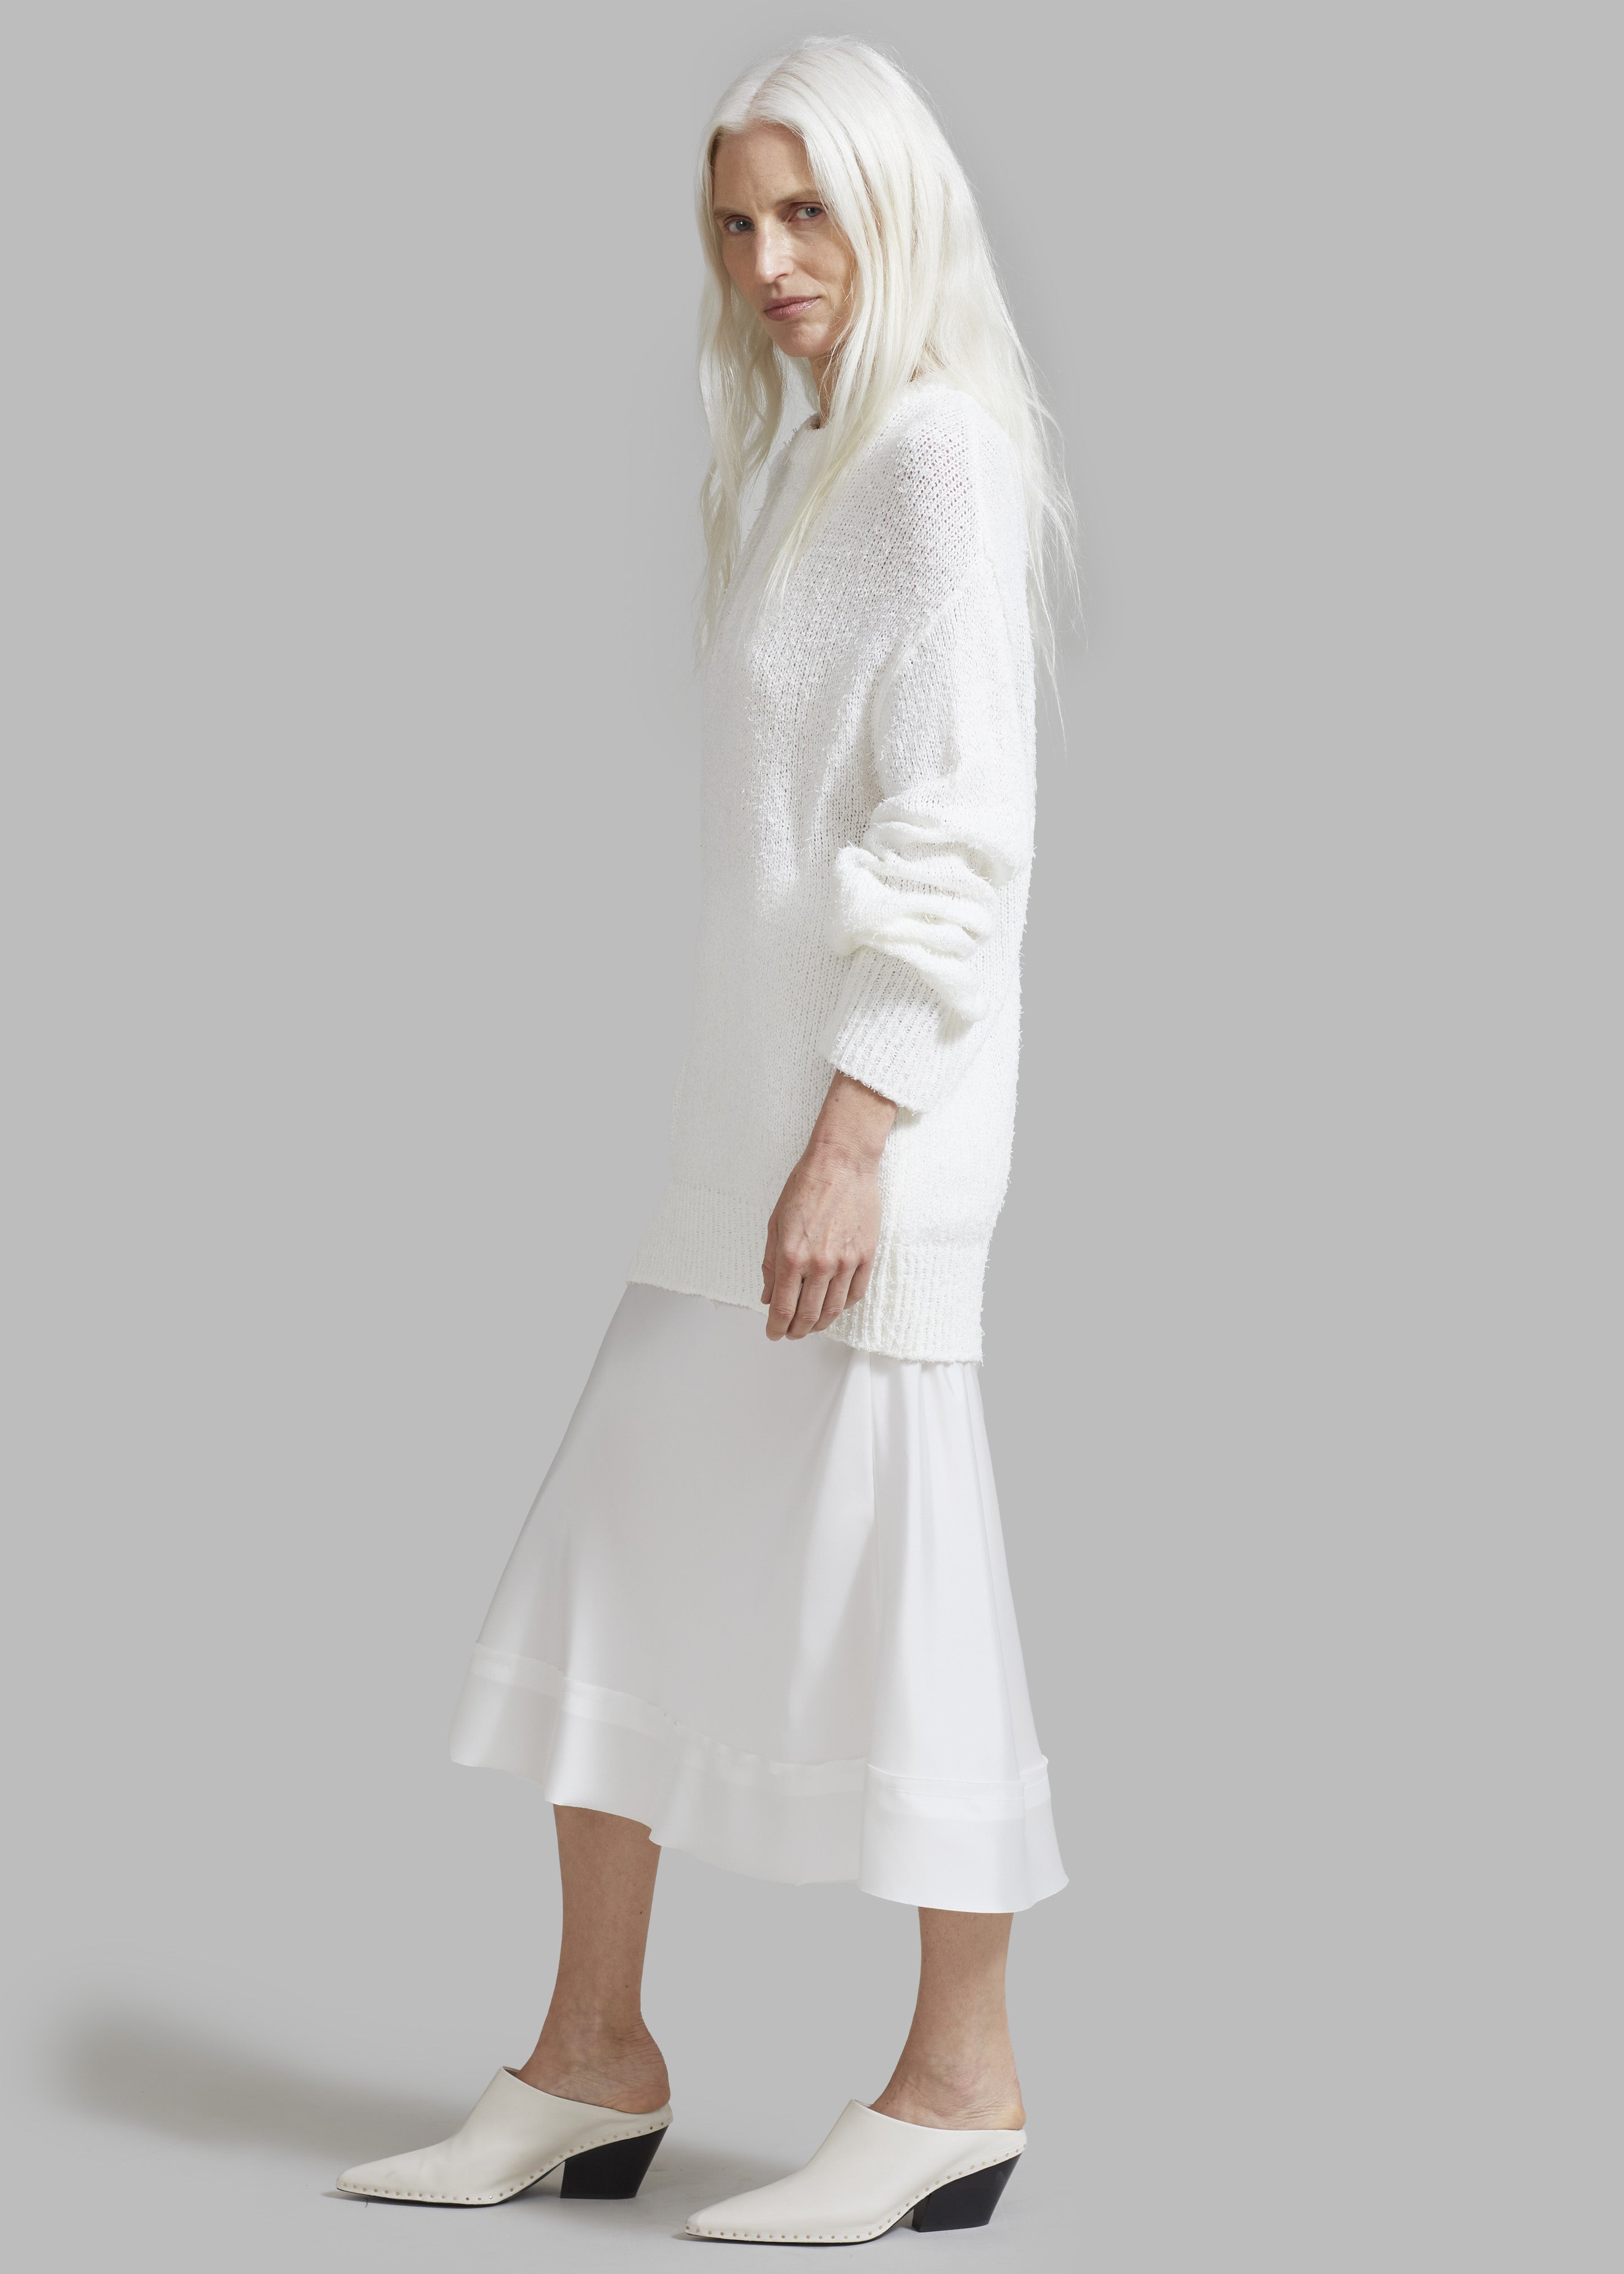 Vosgi Silky Skirt - White - 6